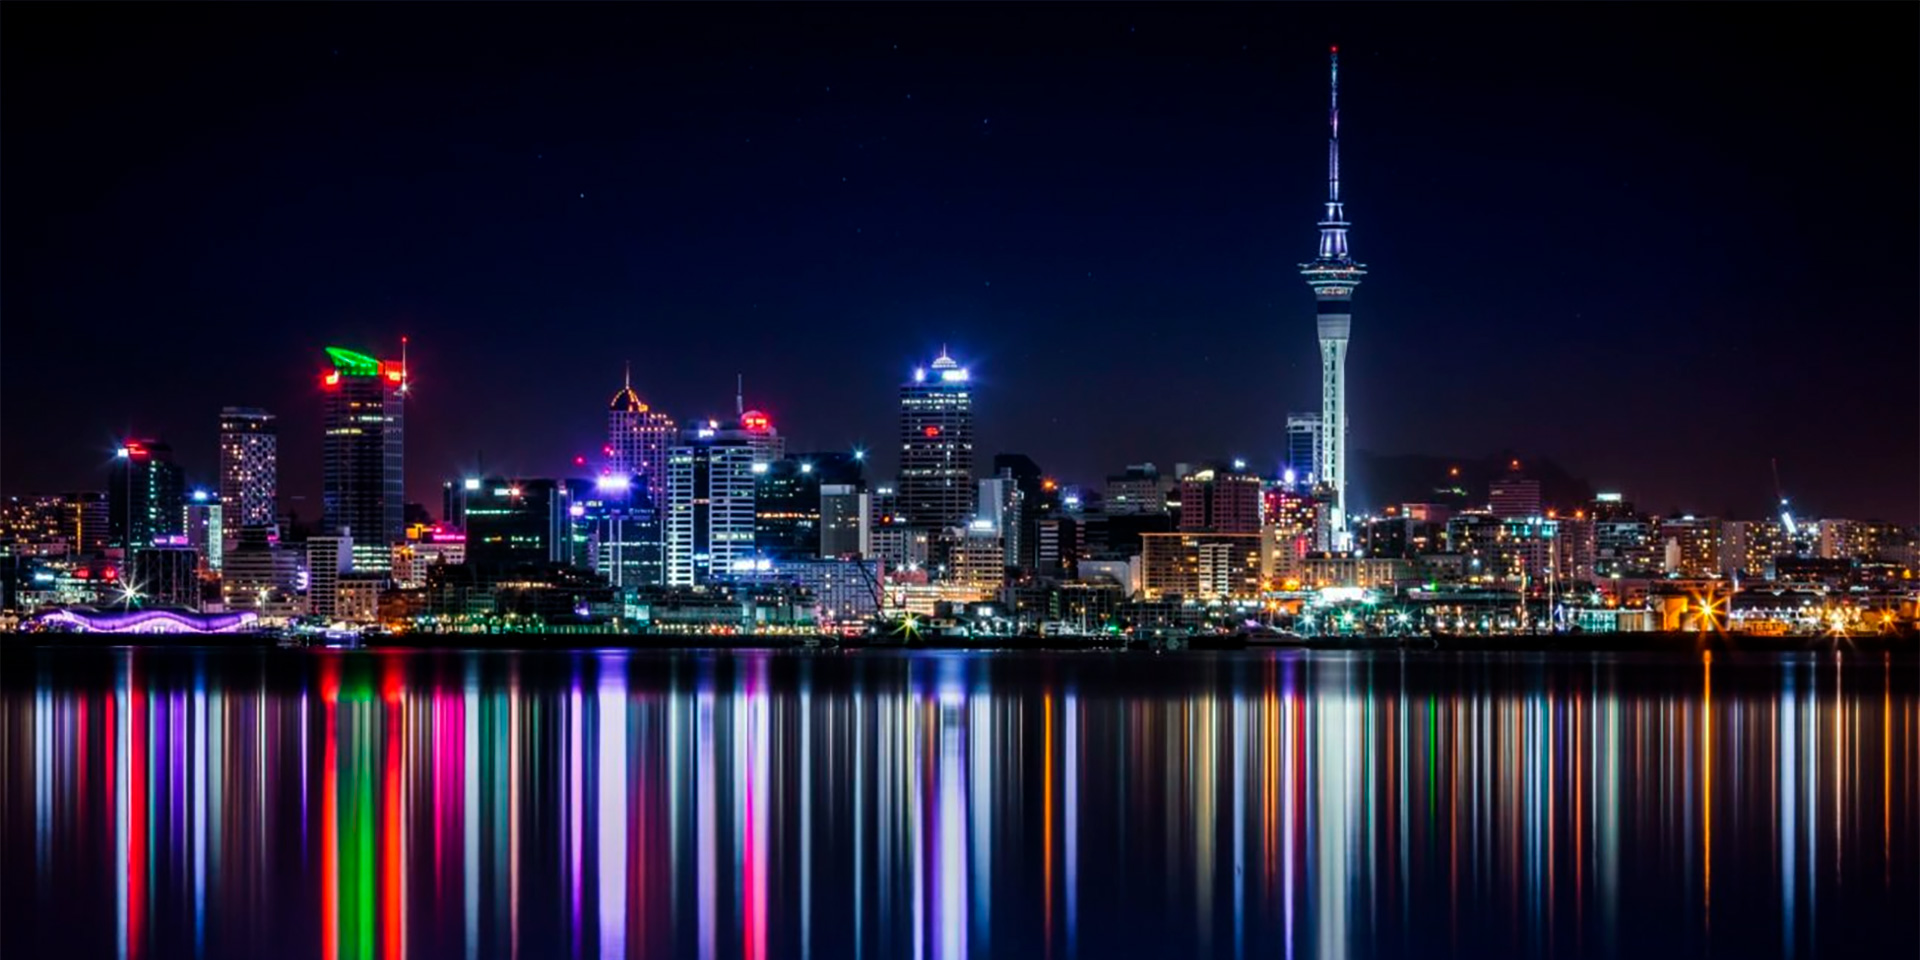 New Zealand's Casino Resorts